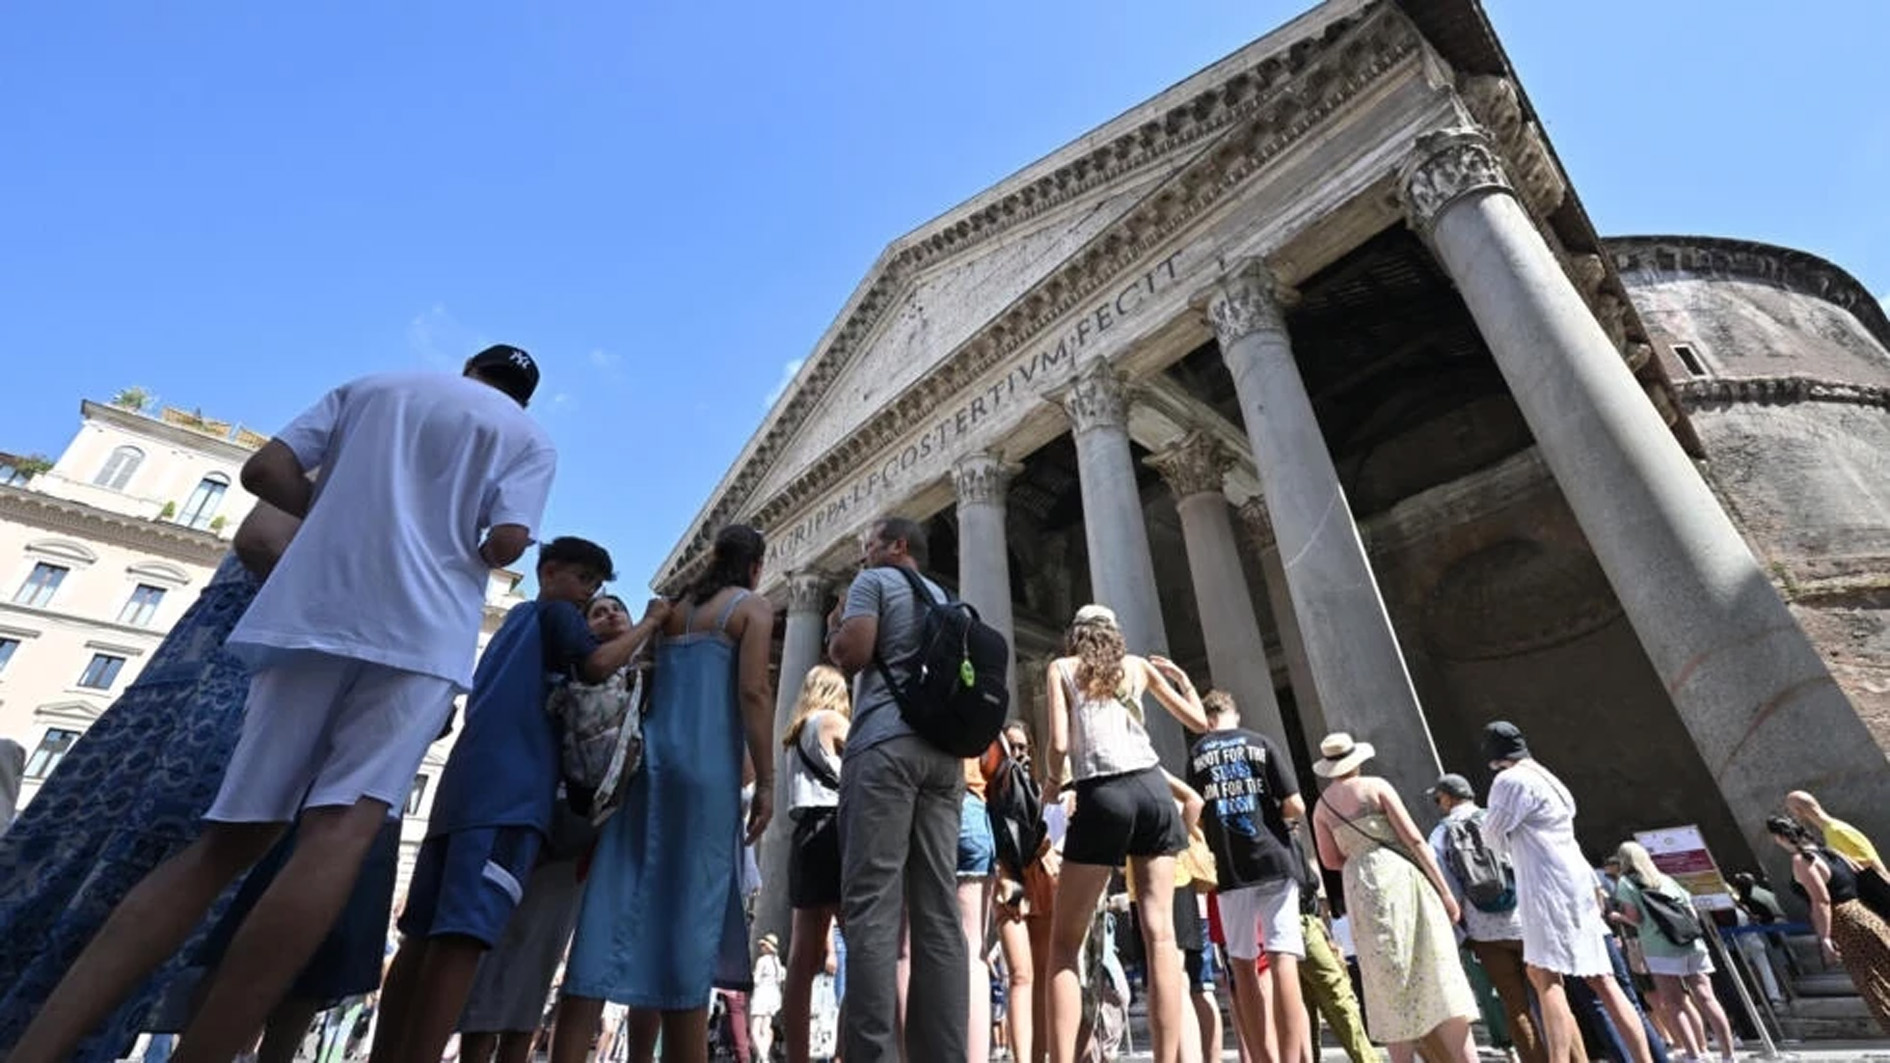 سياح ينتظرون دورهم للدخول إلى البانتيون في روما في الثالث من تموز/يوليو 2023 © البيرتو بيتسولي / ا ف ب